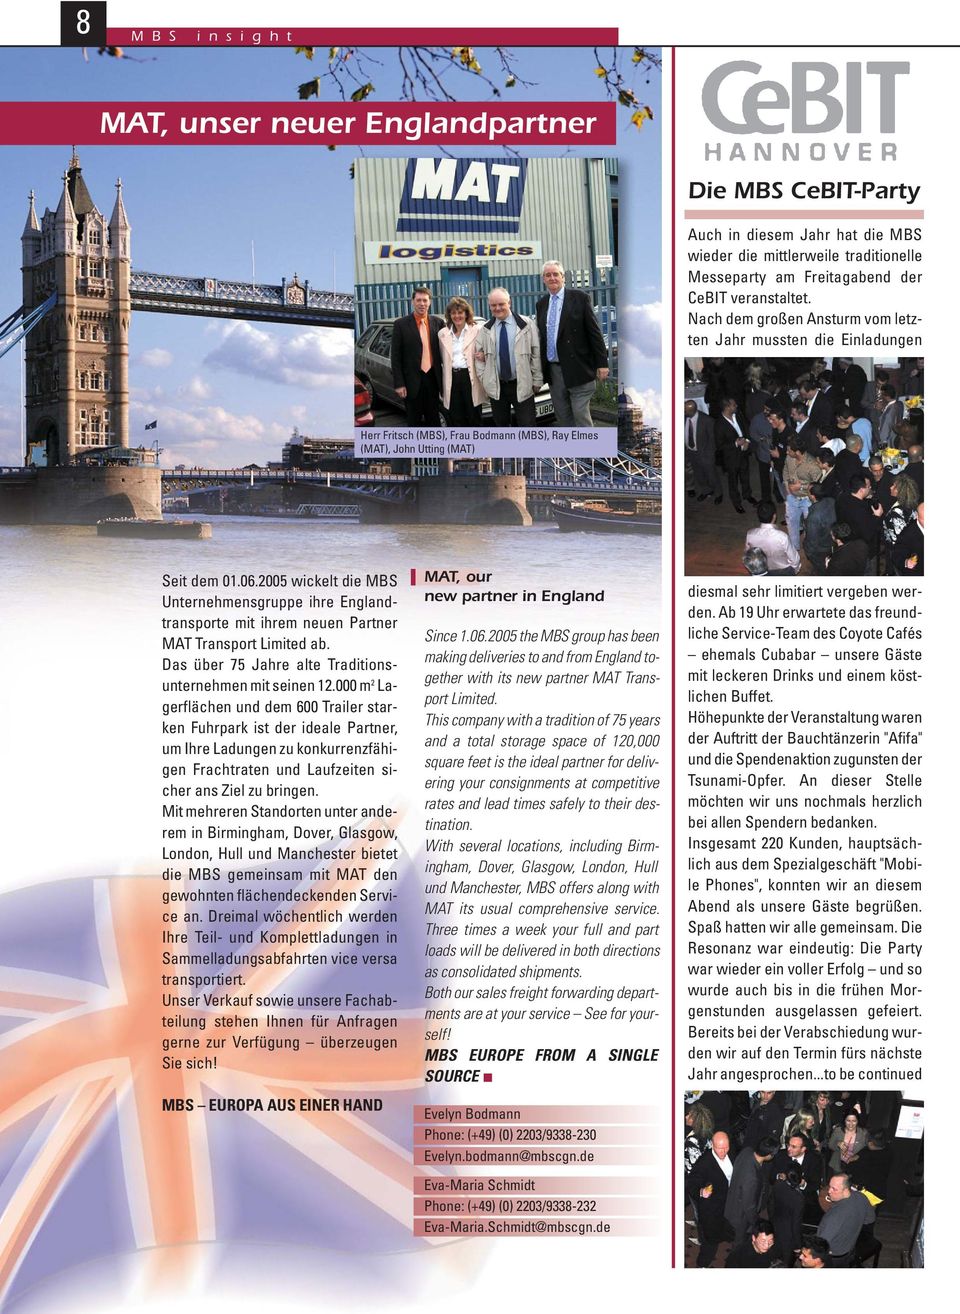 2005 wickelt die MBS Unternehmensgruppe ihre Englandtransporte mit ihrem neuen Partner MAT Transport Limited ab. Das über 75 Jahre alte Traditionsunternehmen mit seinen 12.